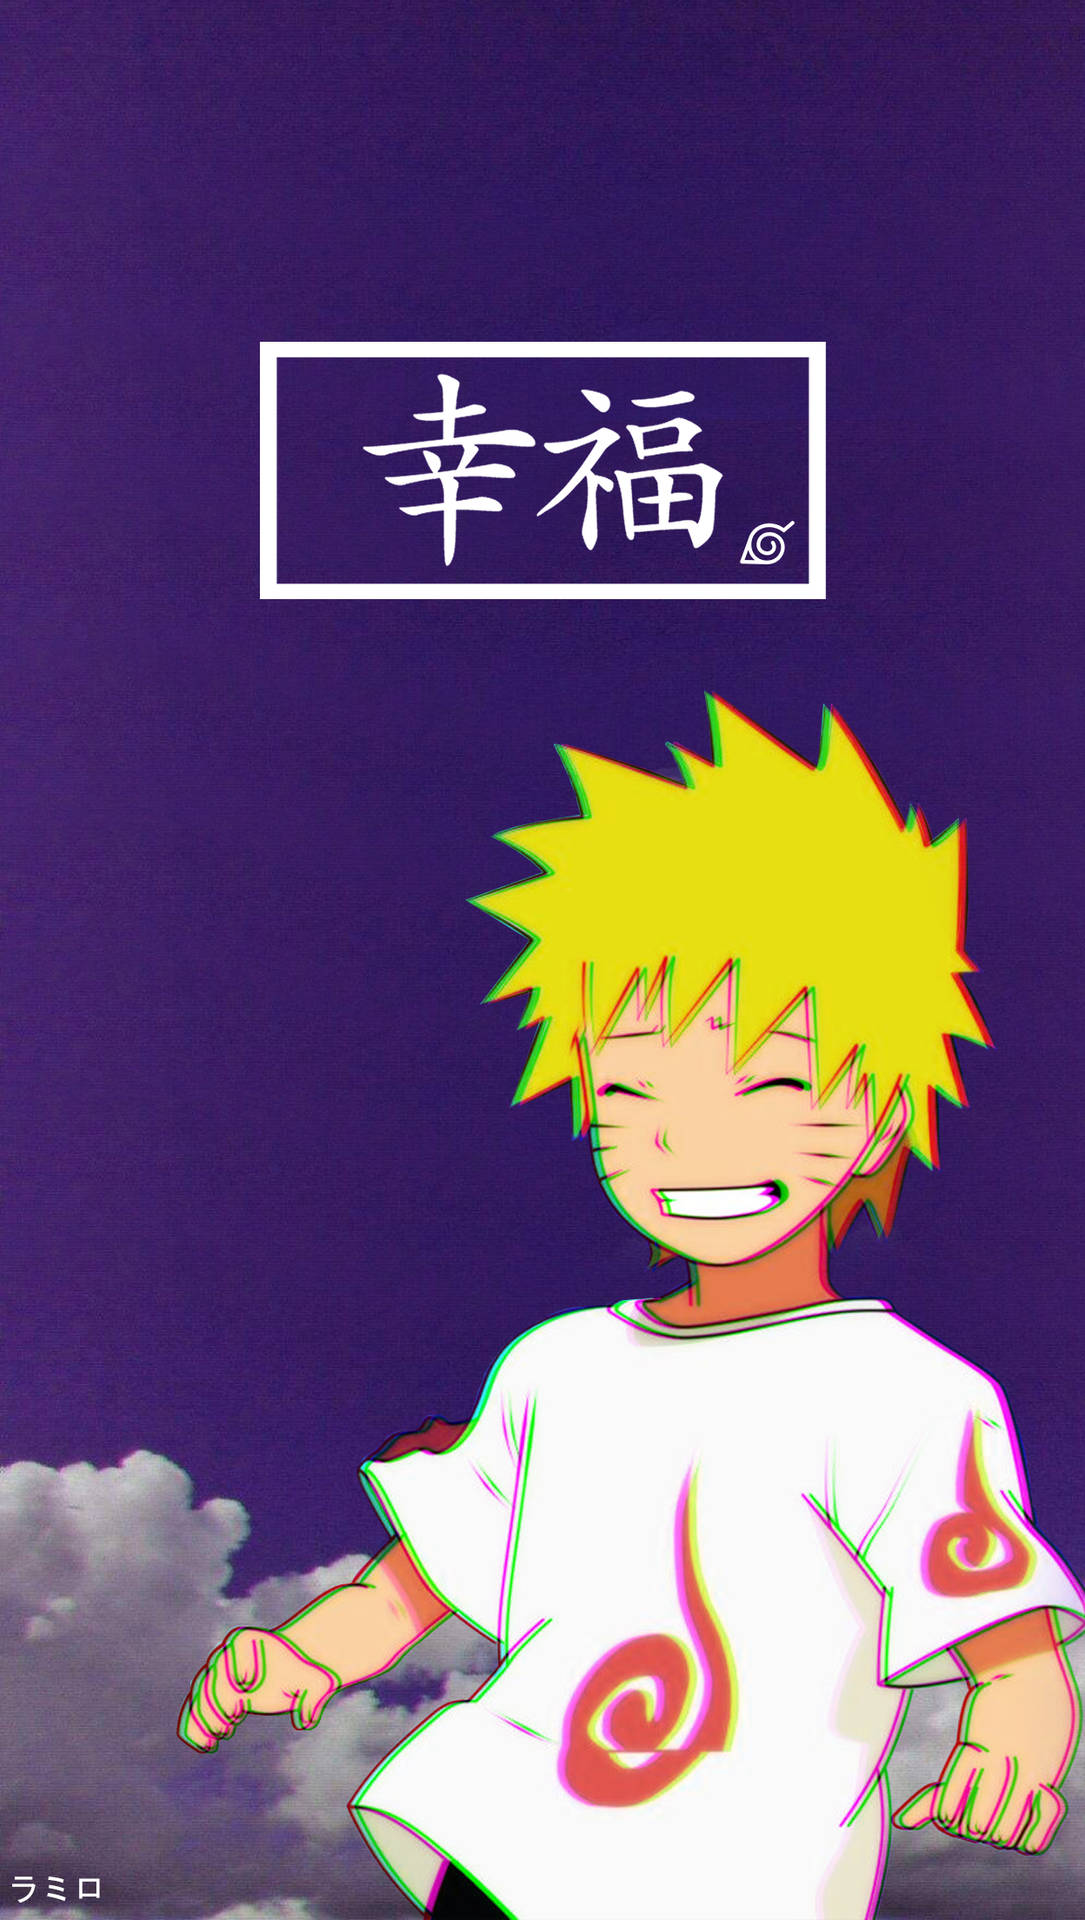 Unpersonaggio Di Naruto Con Una Maglietta Gialla E Uno Sfondo Viola. Sfondo